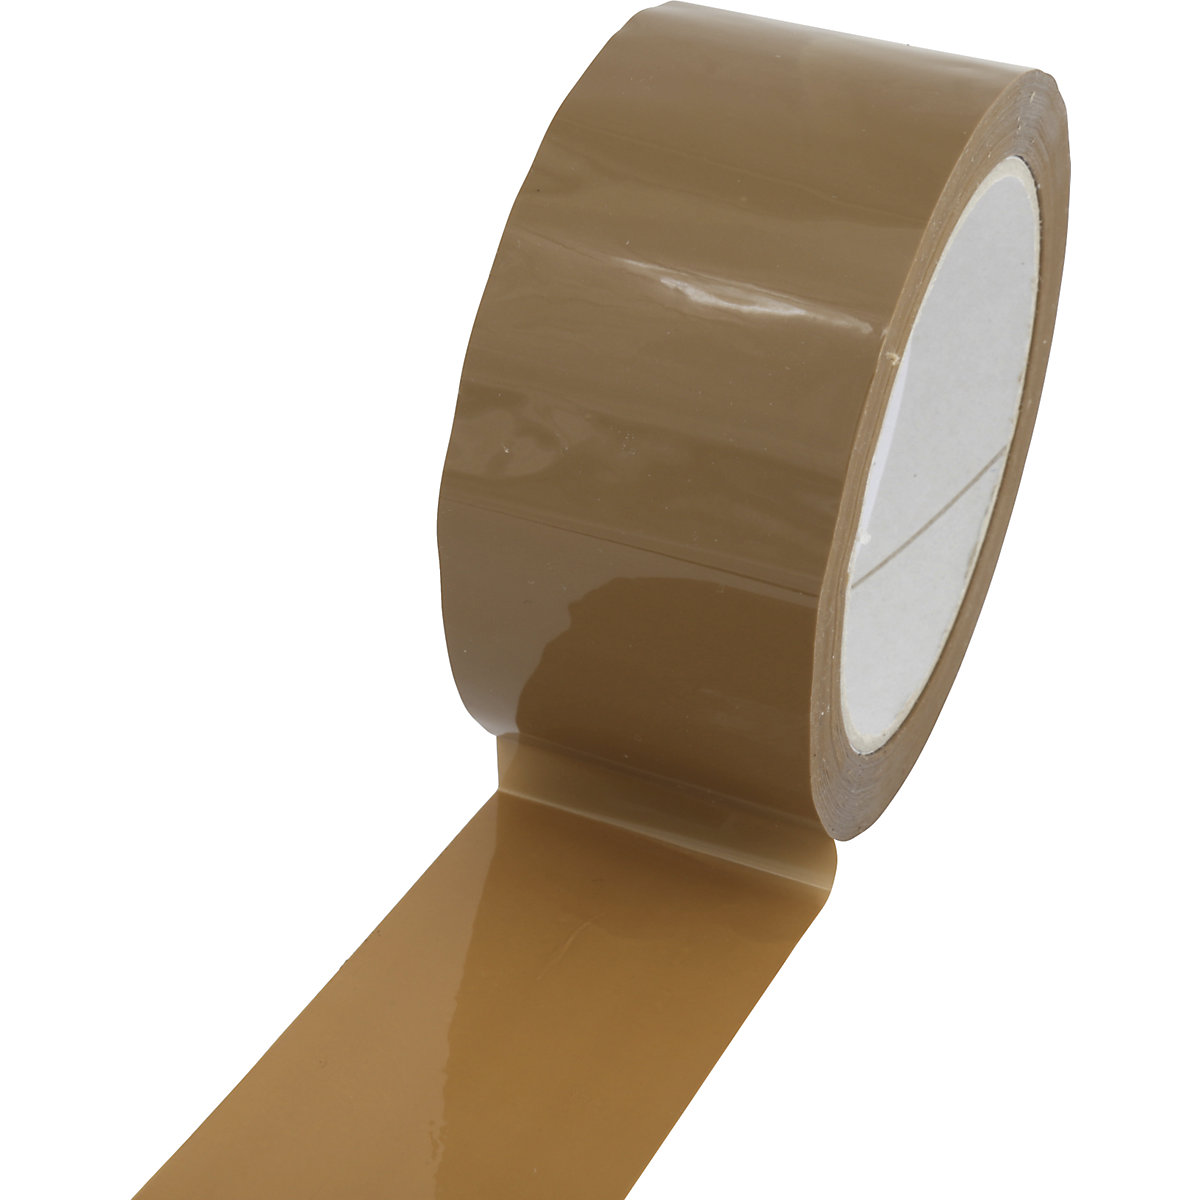 Cinta de embalaje de PP, modelo silencioso y extrafuerte, UE 36 rollos, marrón, anchura de cinta 50 mm-3